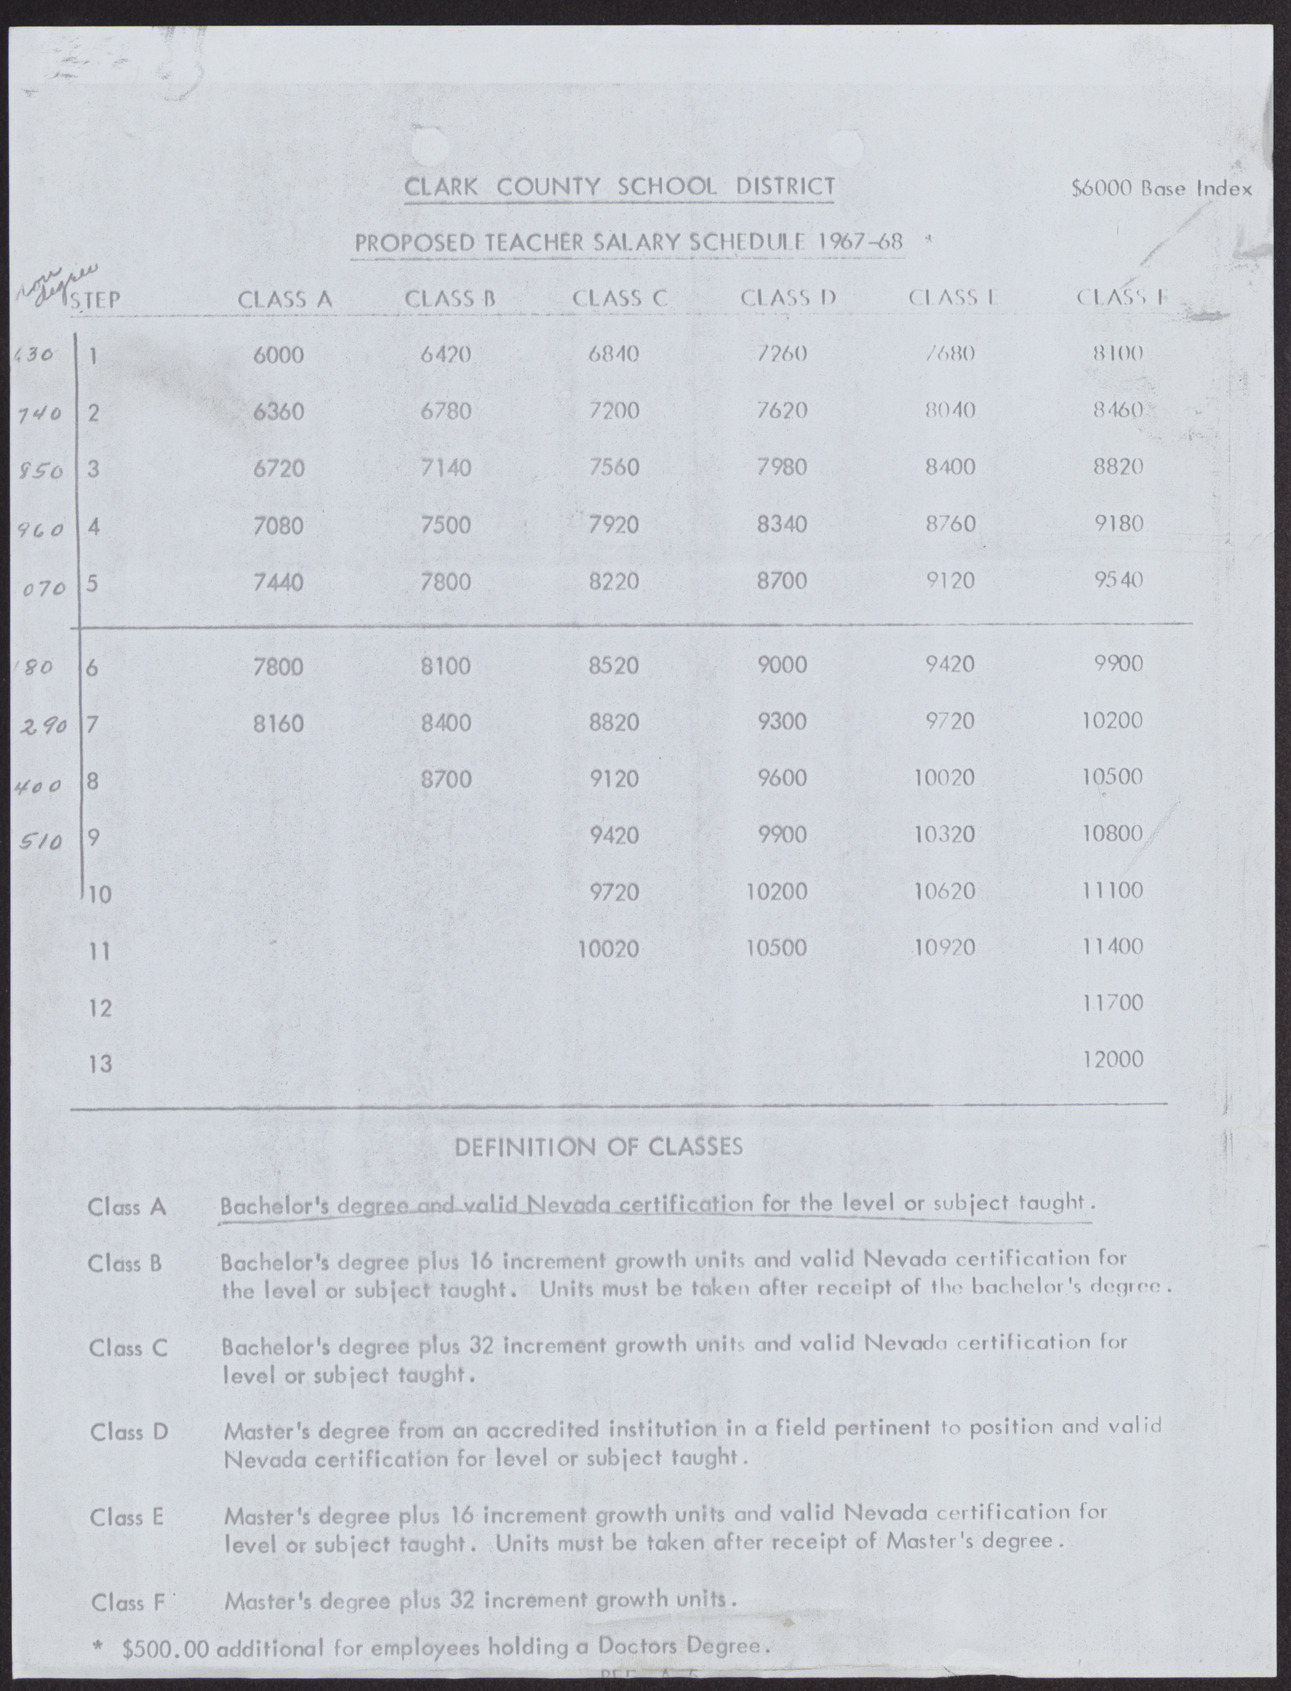 Clark County School District Proposed Teacher Salary Schedule 1967-68